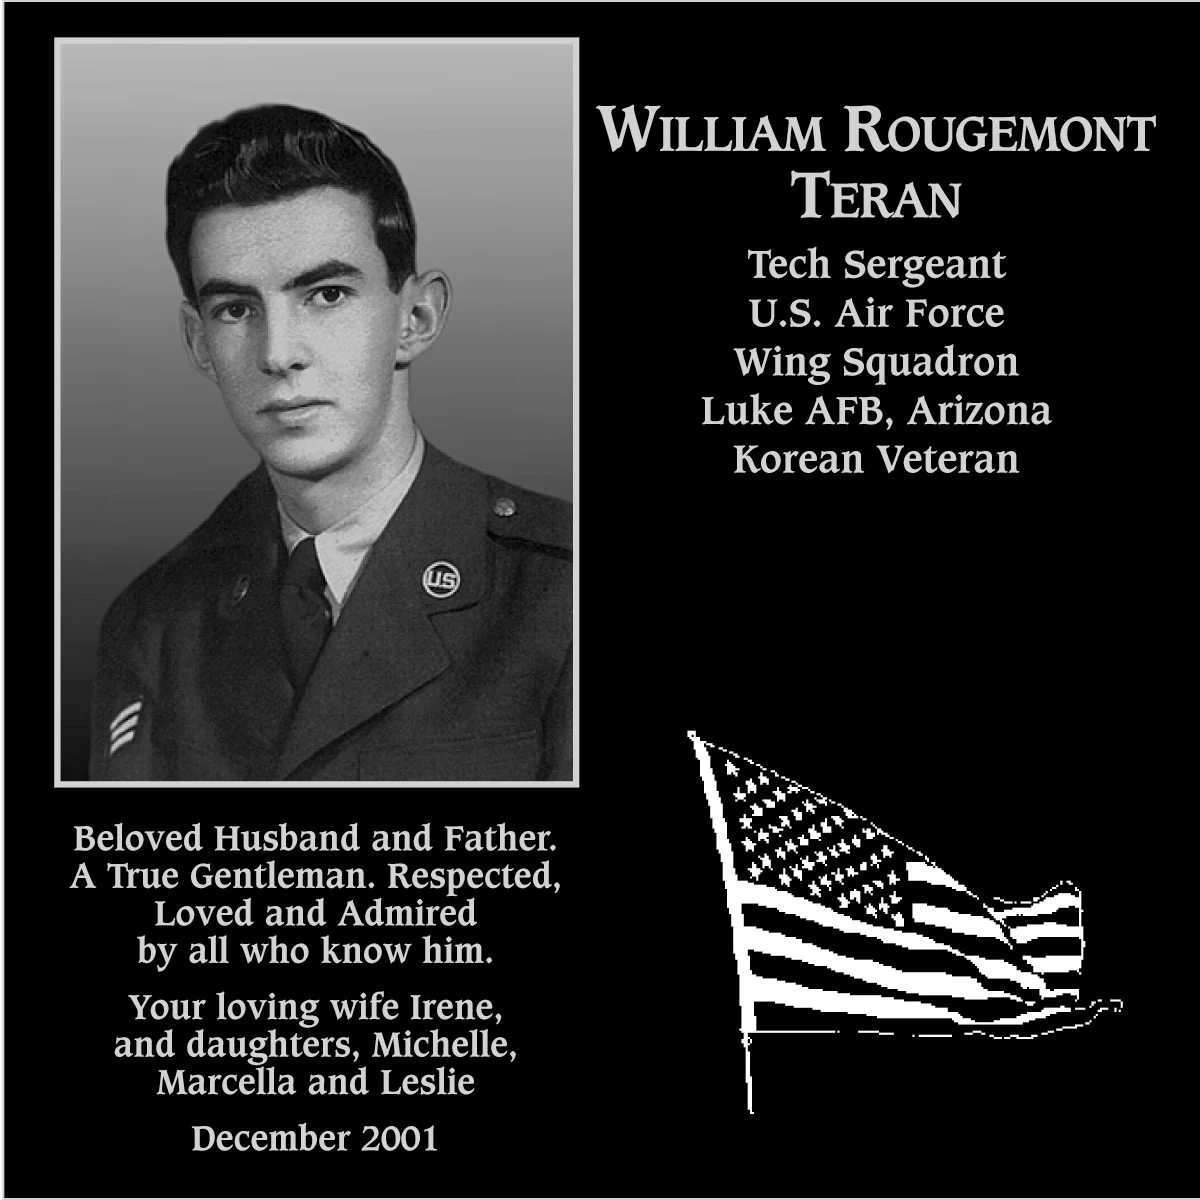 William Rougemont Teran